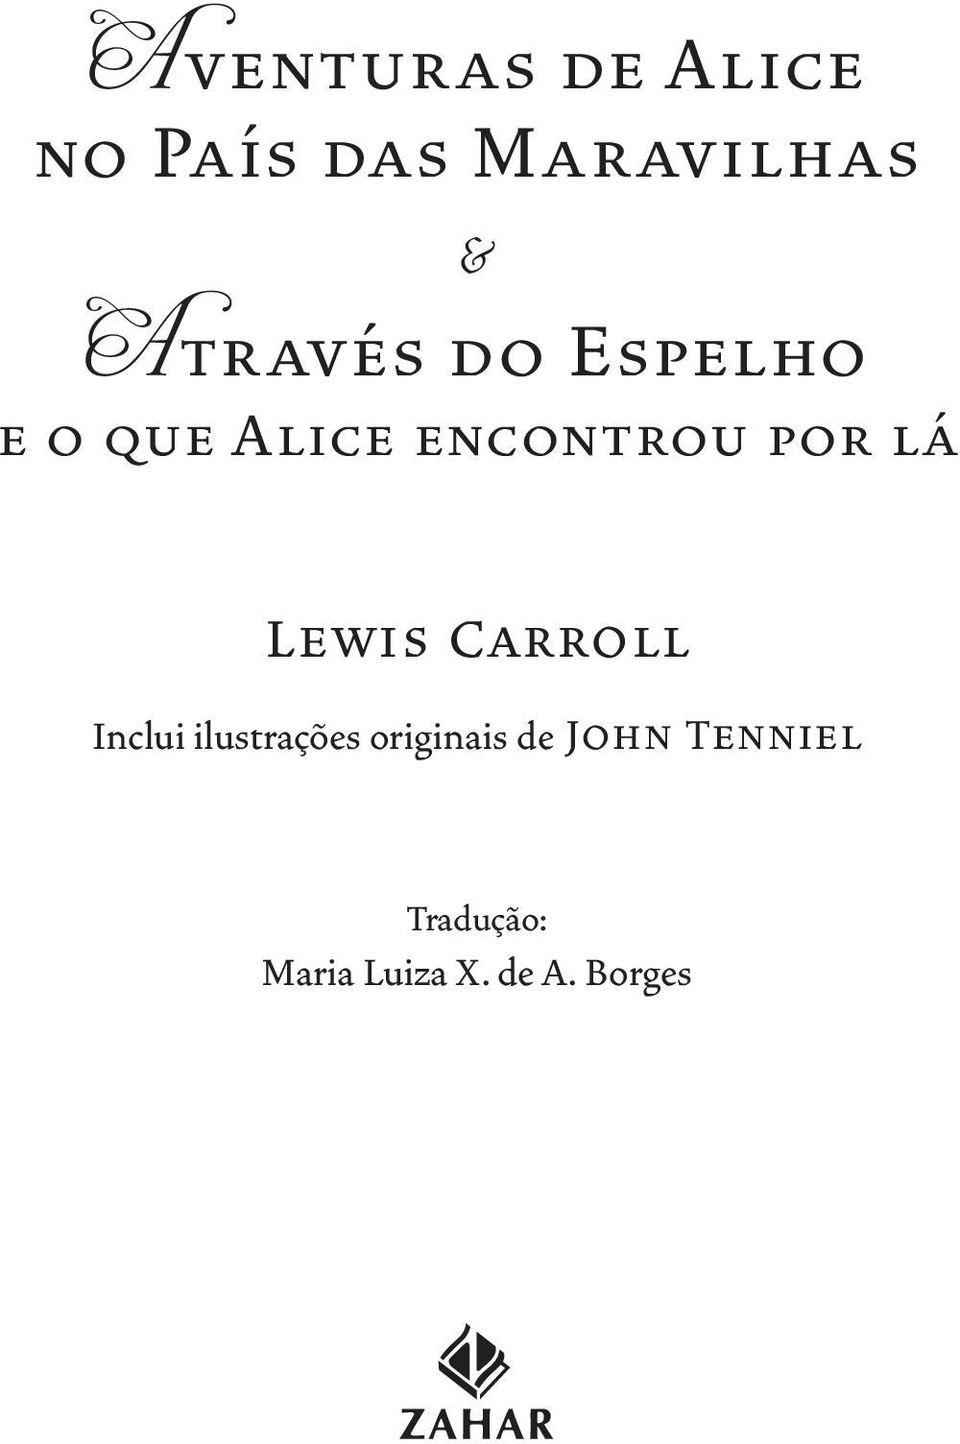 lá Lewis Carroll Inclui ilustrações originais